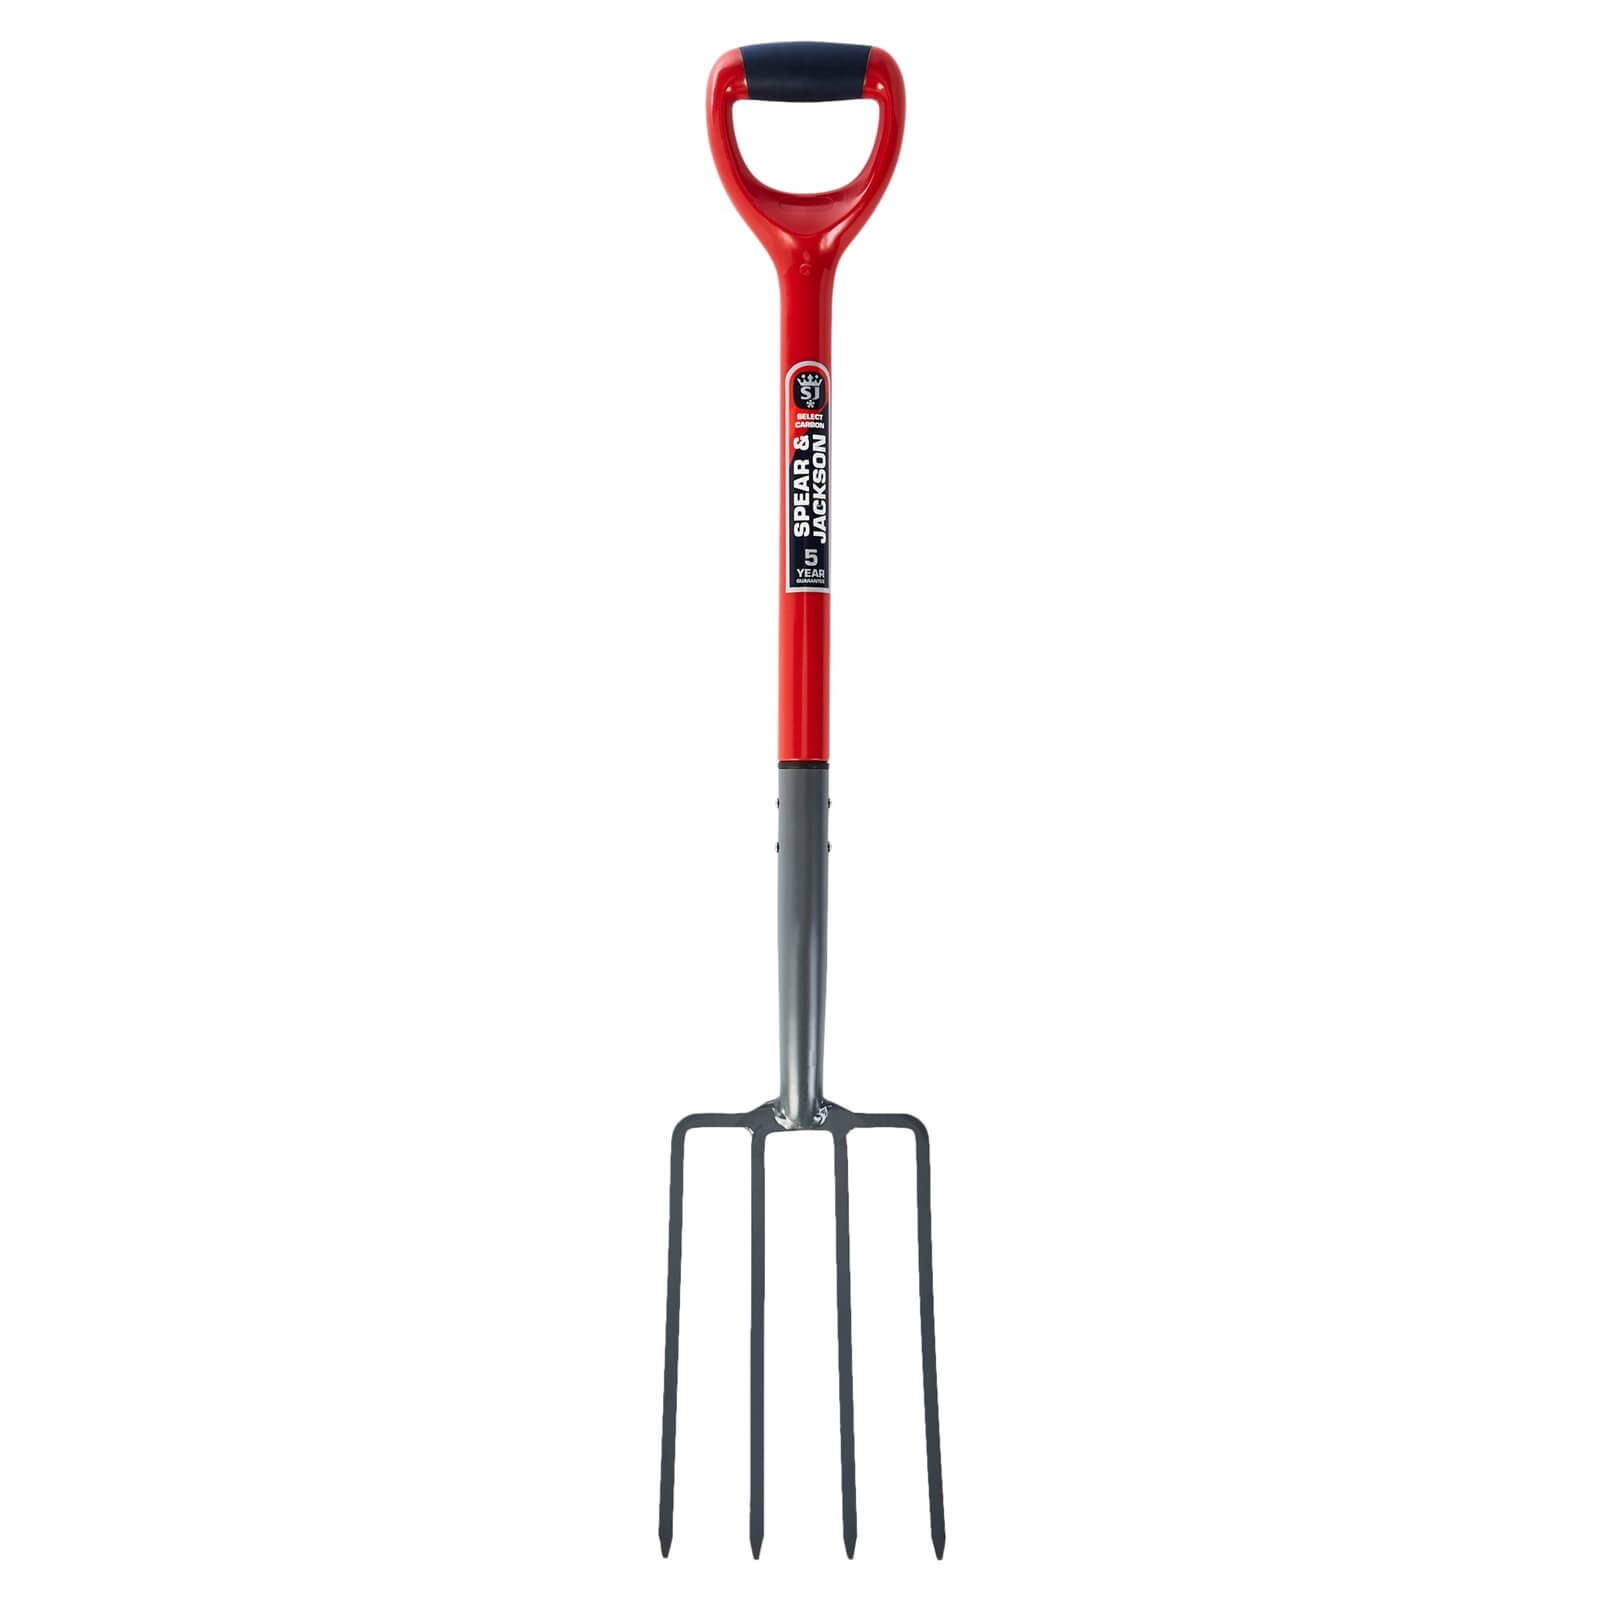 Spear & Jackson Select Carbon Digging Fork